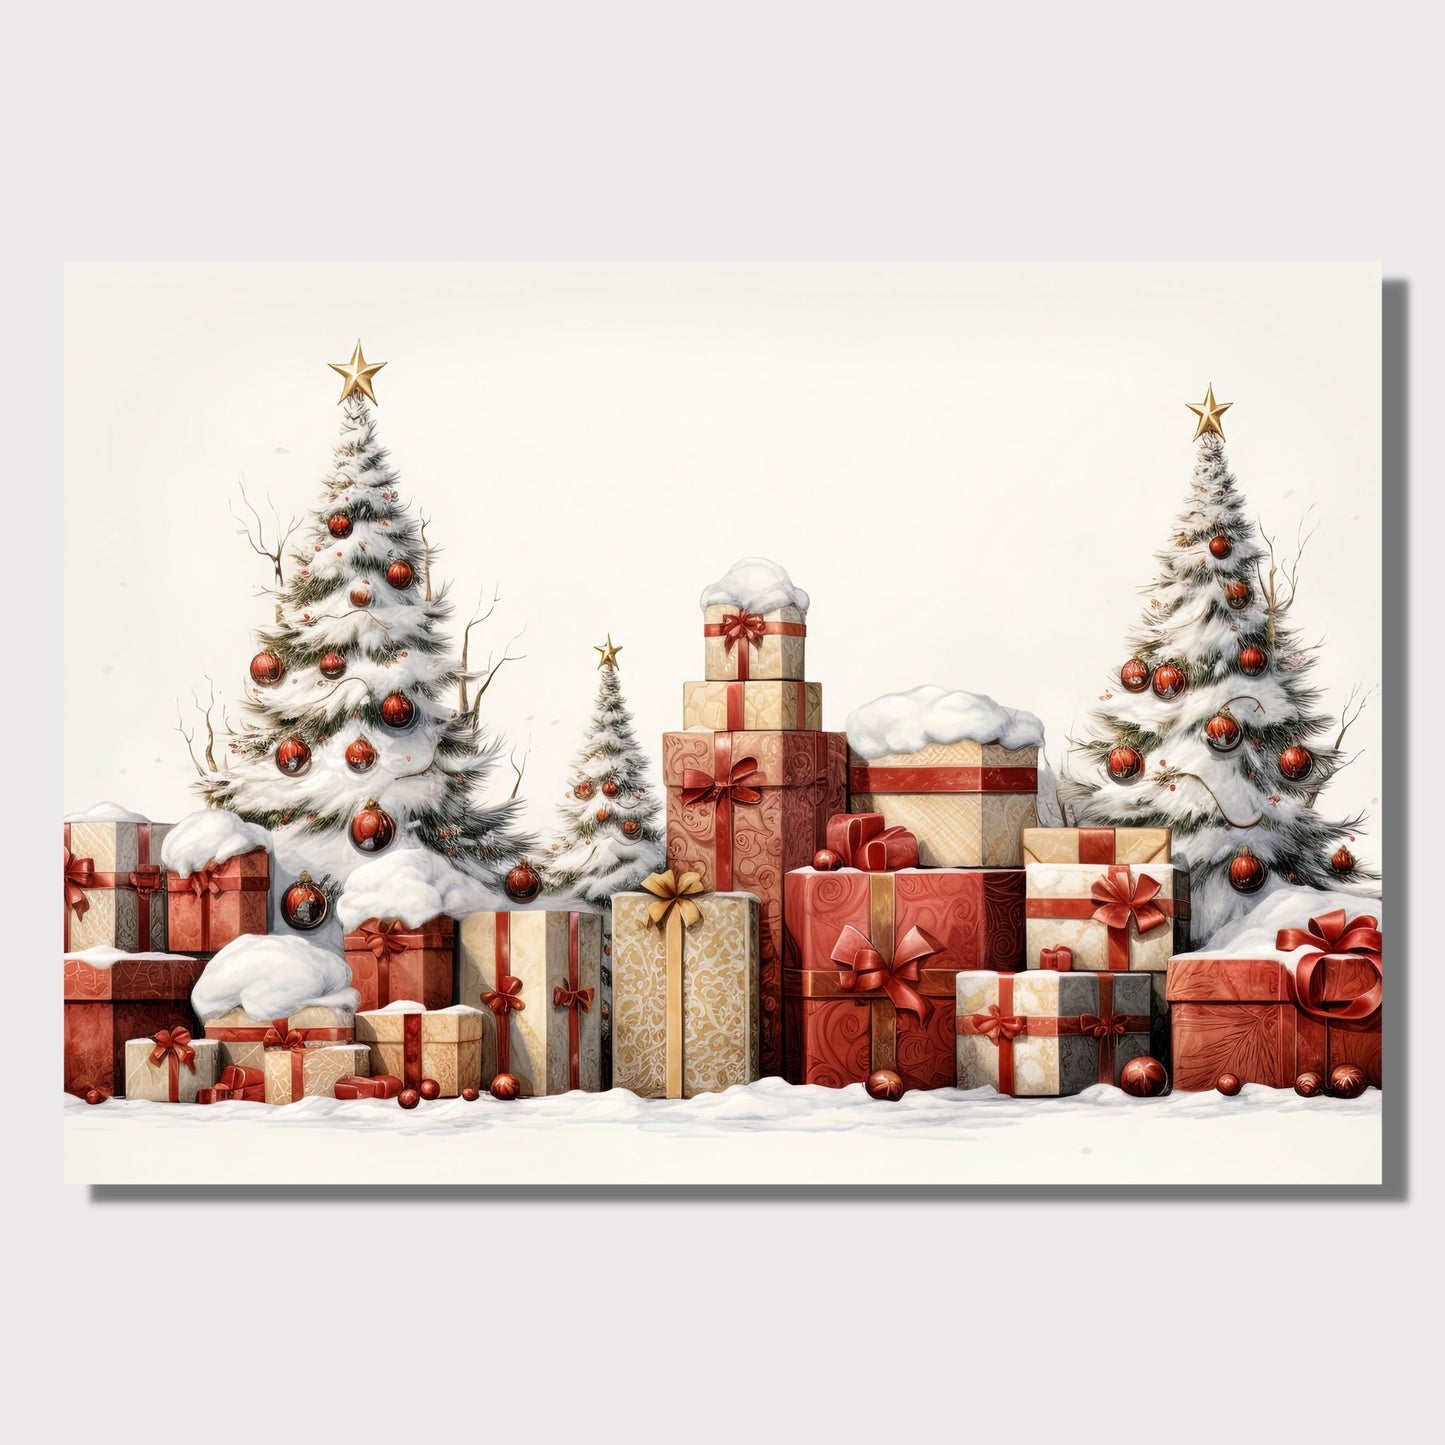 Tre juletre med julepynt og mange julepakker som står ute i snøen.  Illustrasjonen viser motivet på lerret som henger på en vegg.